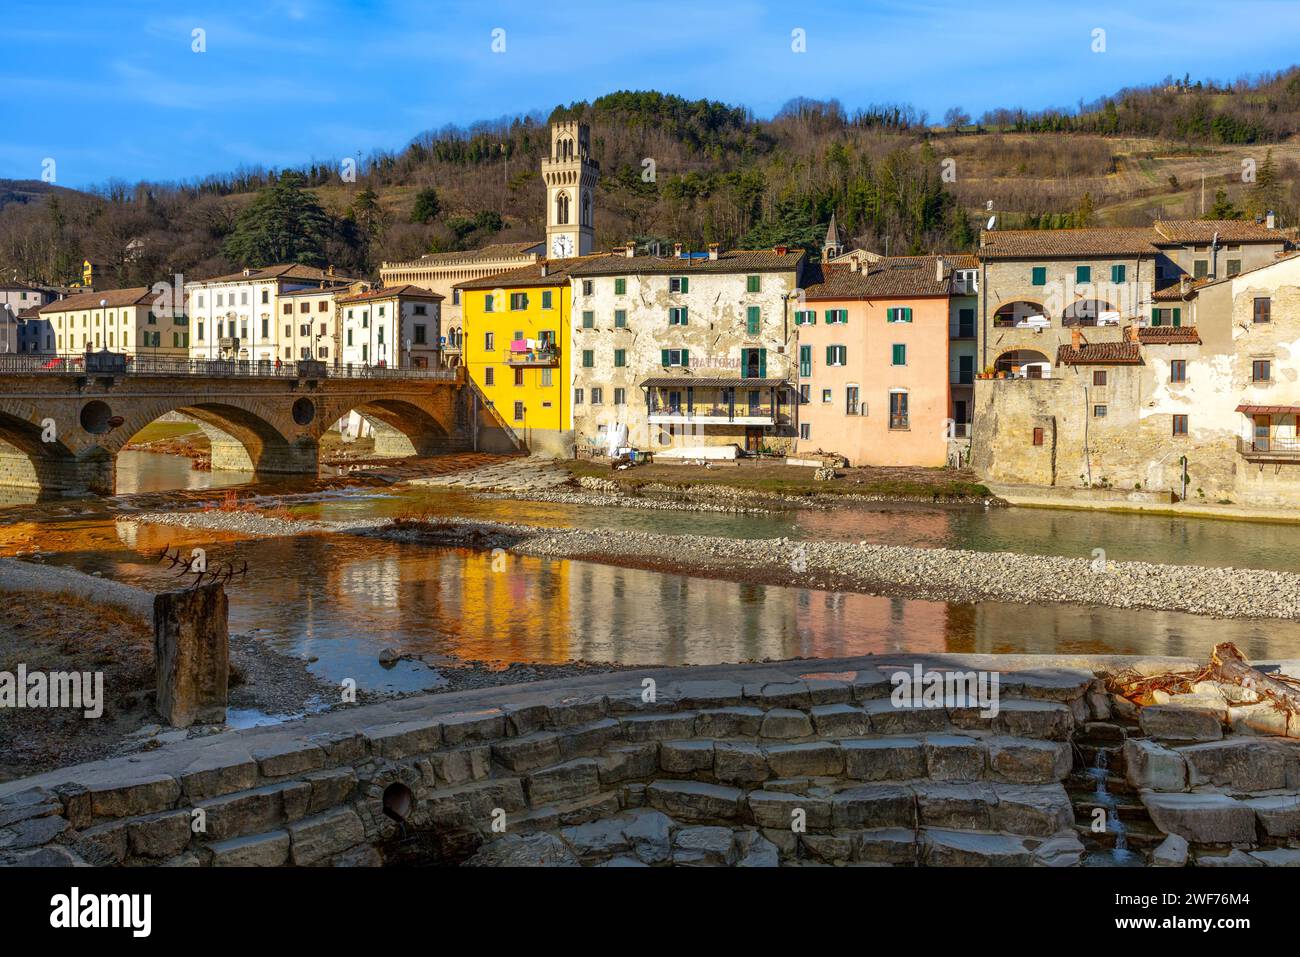 La città vecchia di Santa Sofia in Emilia-Romagna, Italia. Foto Stock